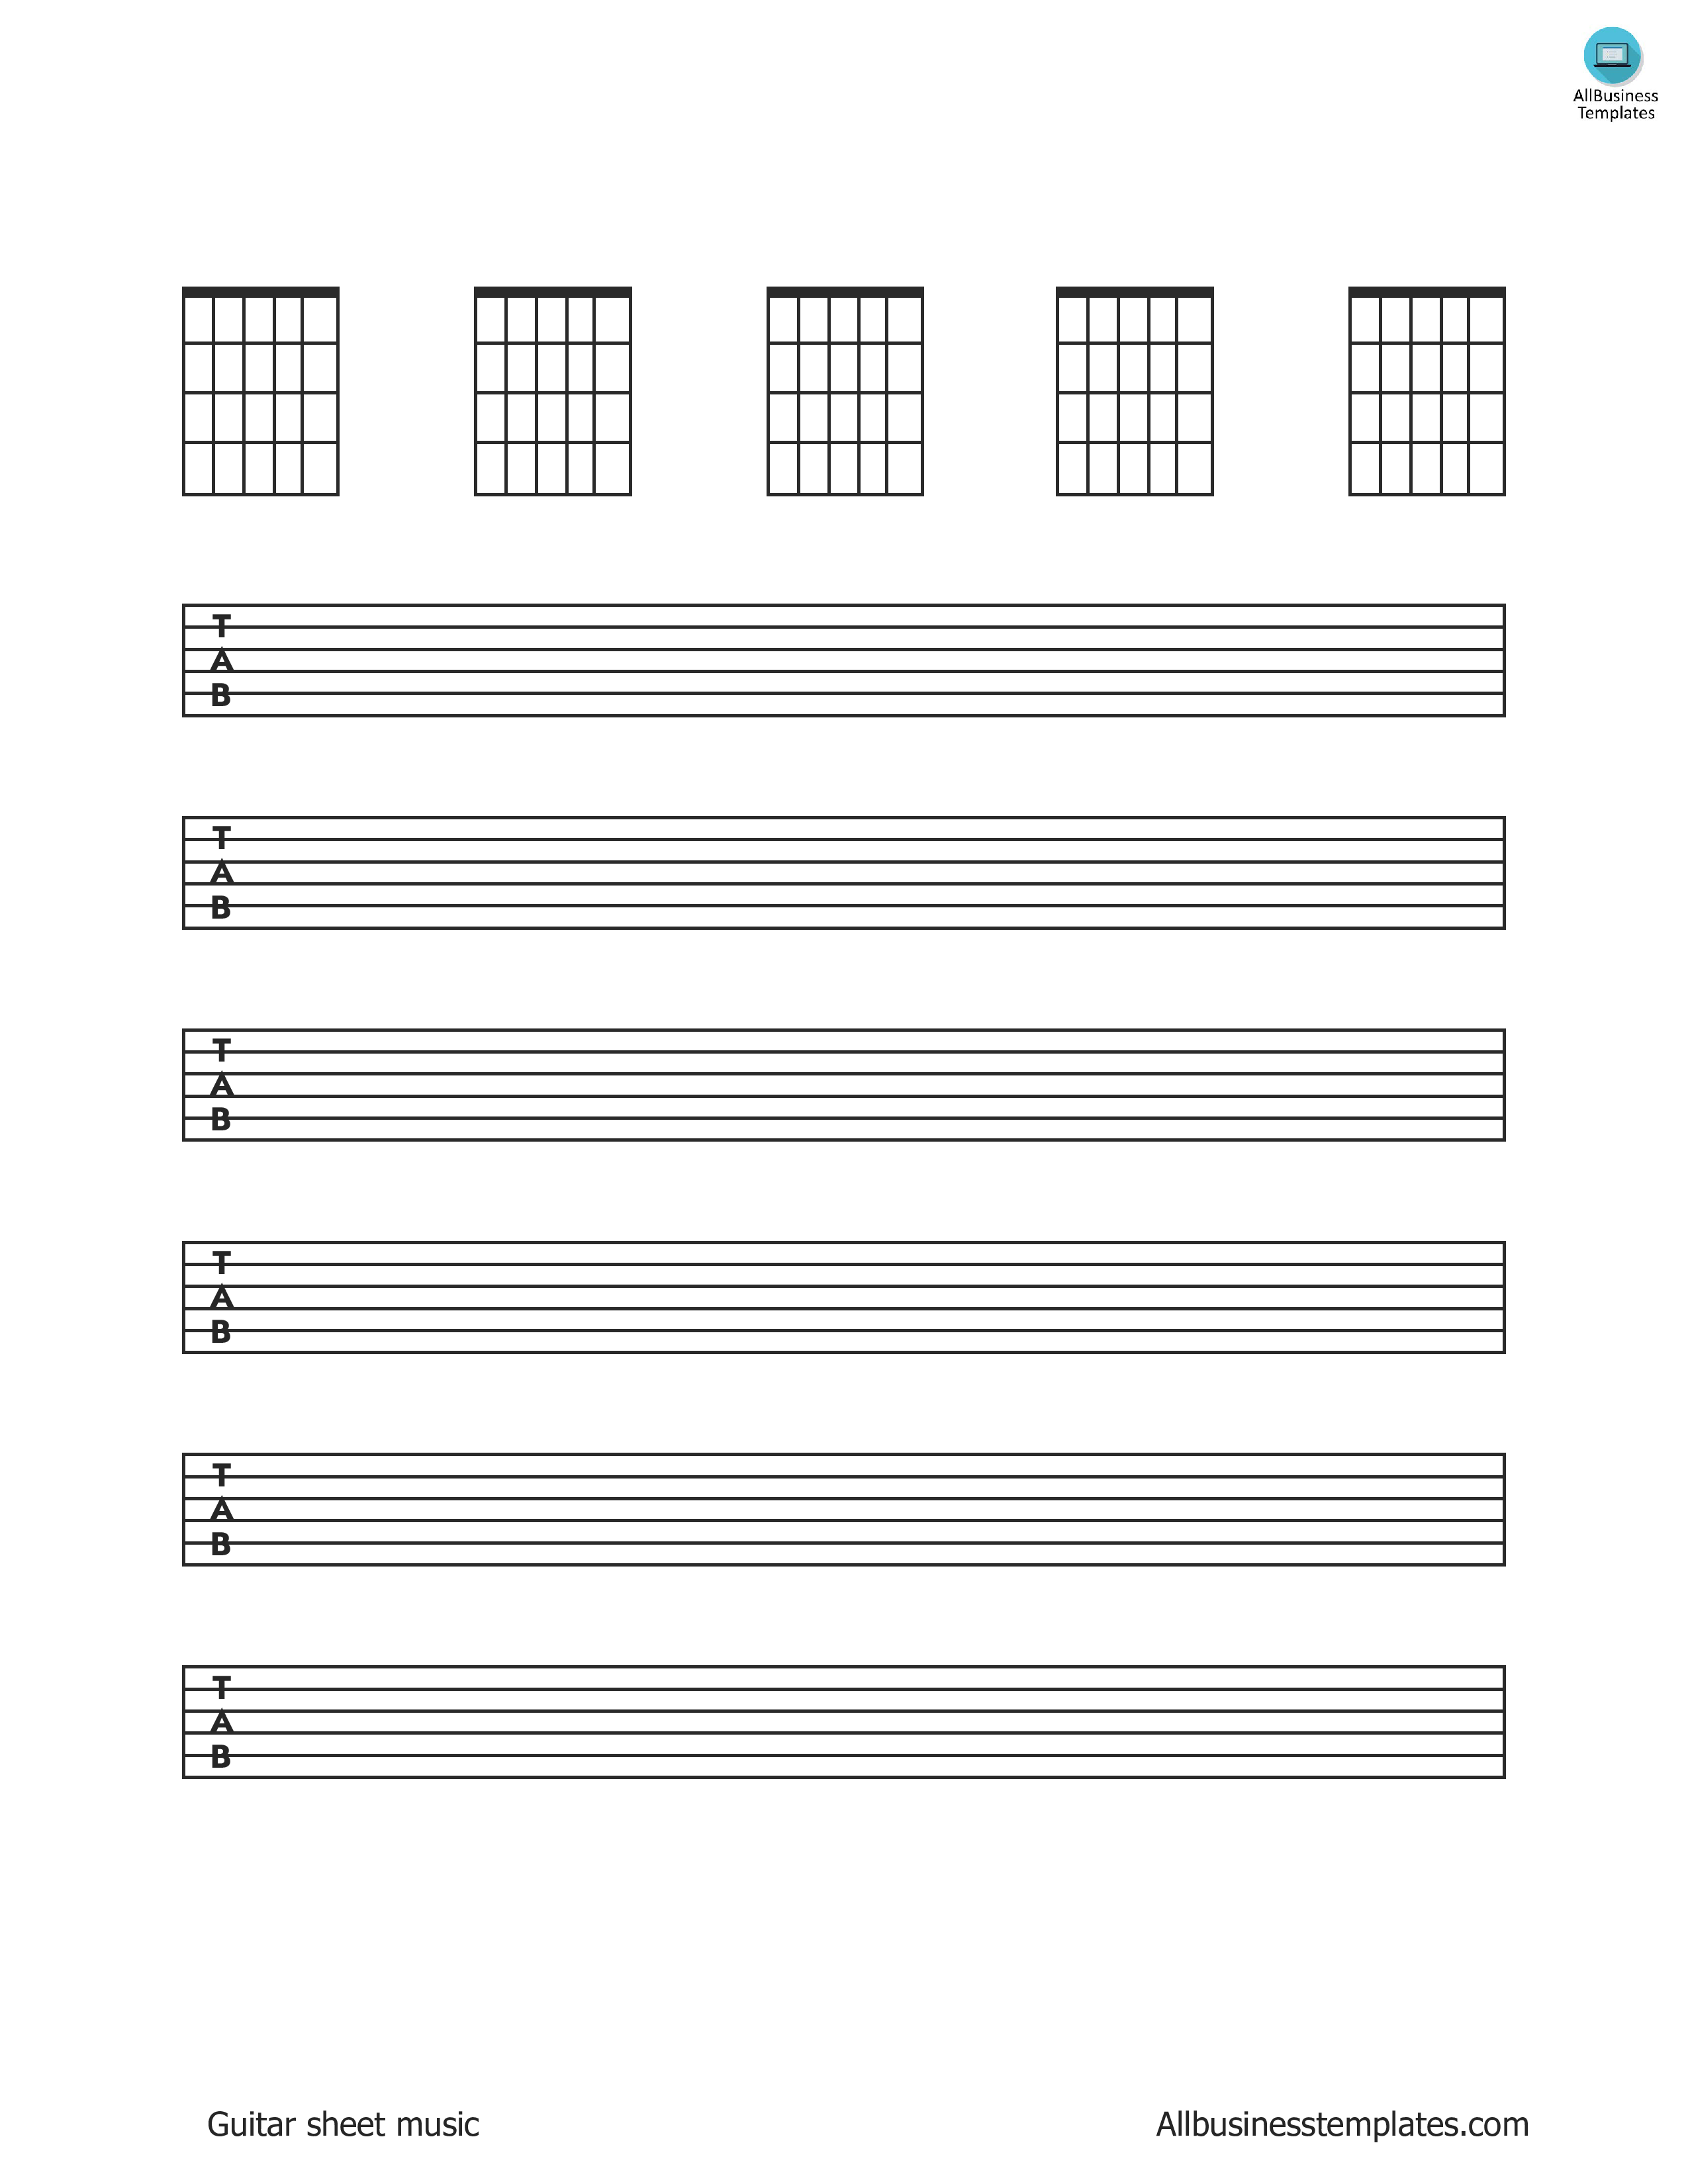 guitar sheet music sheets Hauptschablonenbild